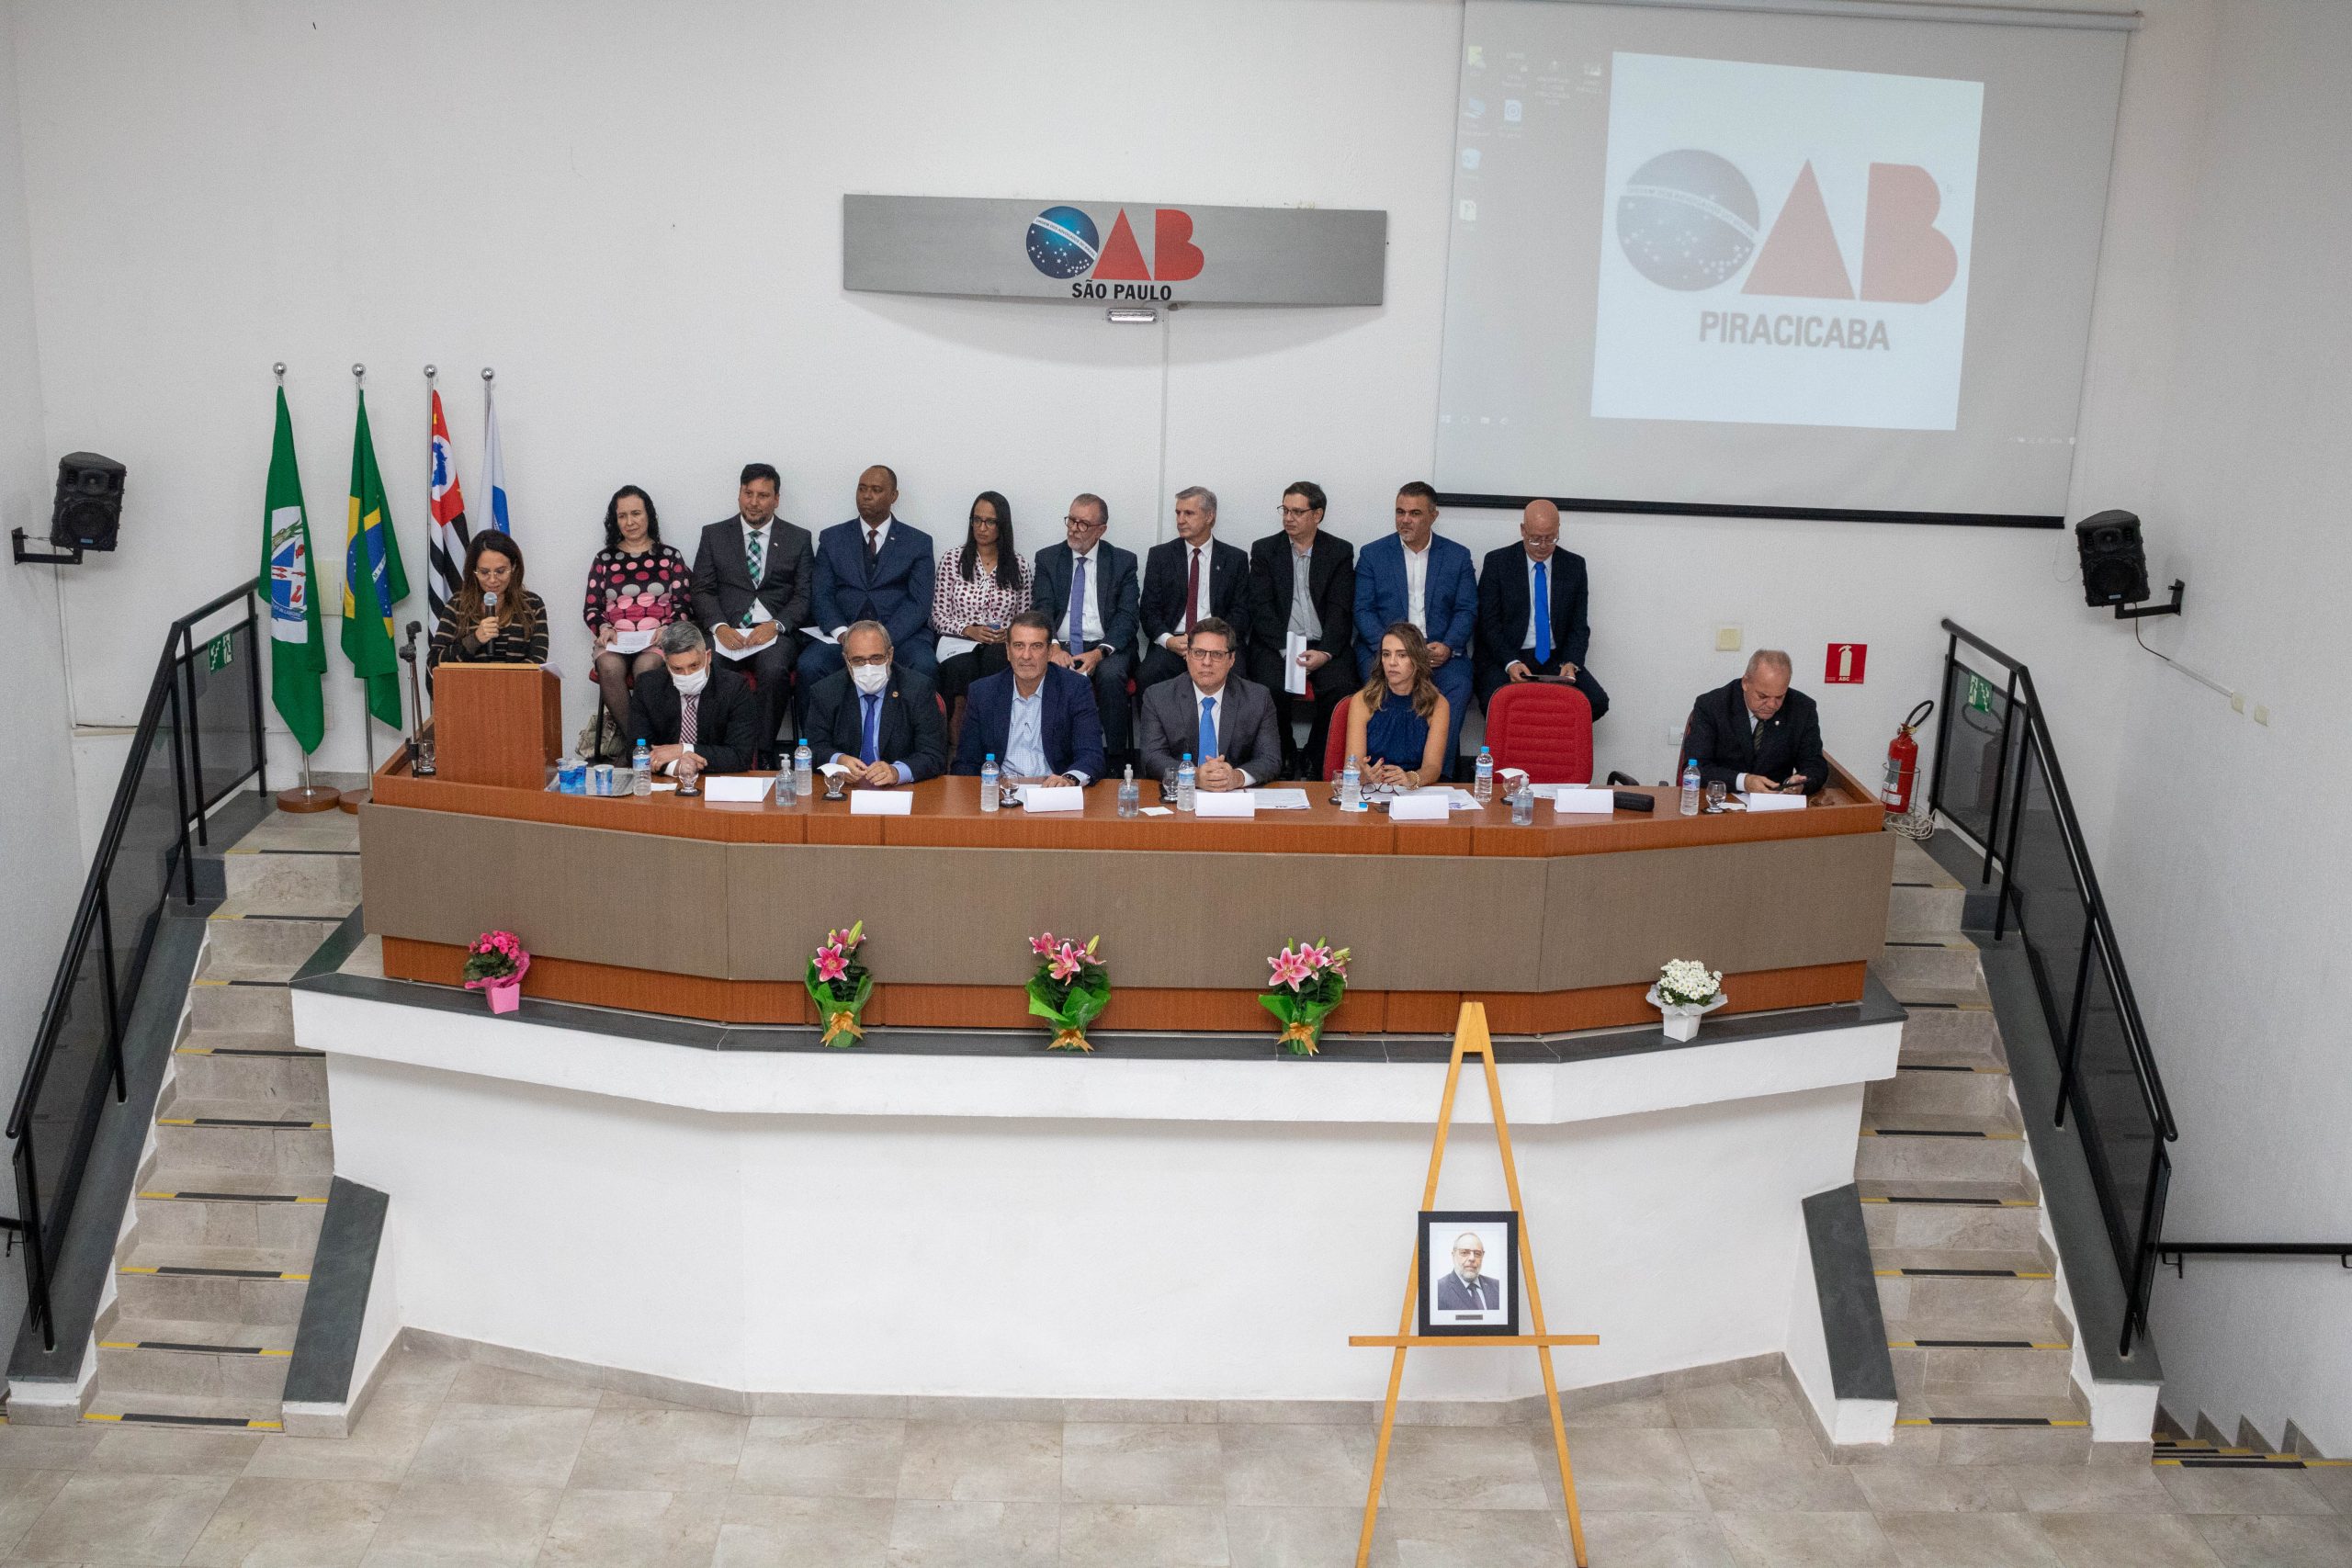 OAB SP participa da cerimônia de posse da diretoria da OAB Piracicaba e celebra os 90 anos de sua Subseção